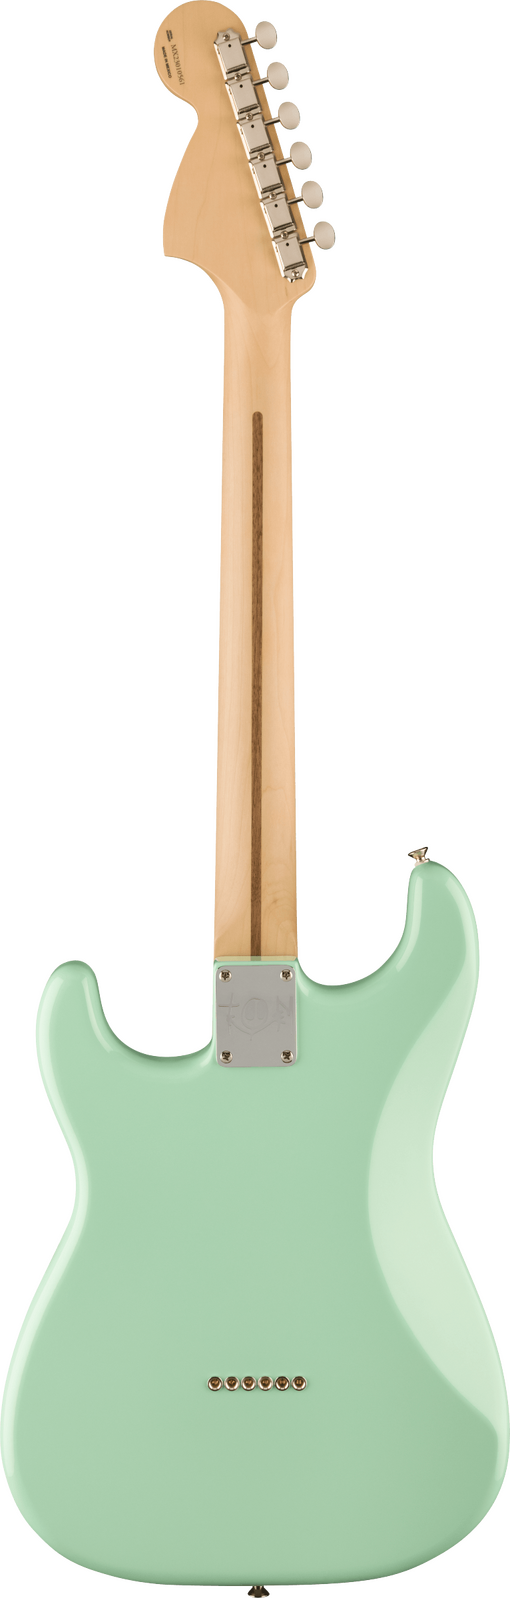 Fender Tom DeLonge Stratocaster Surf Green